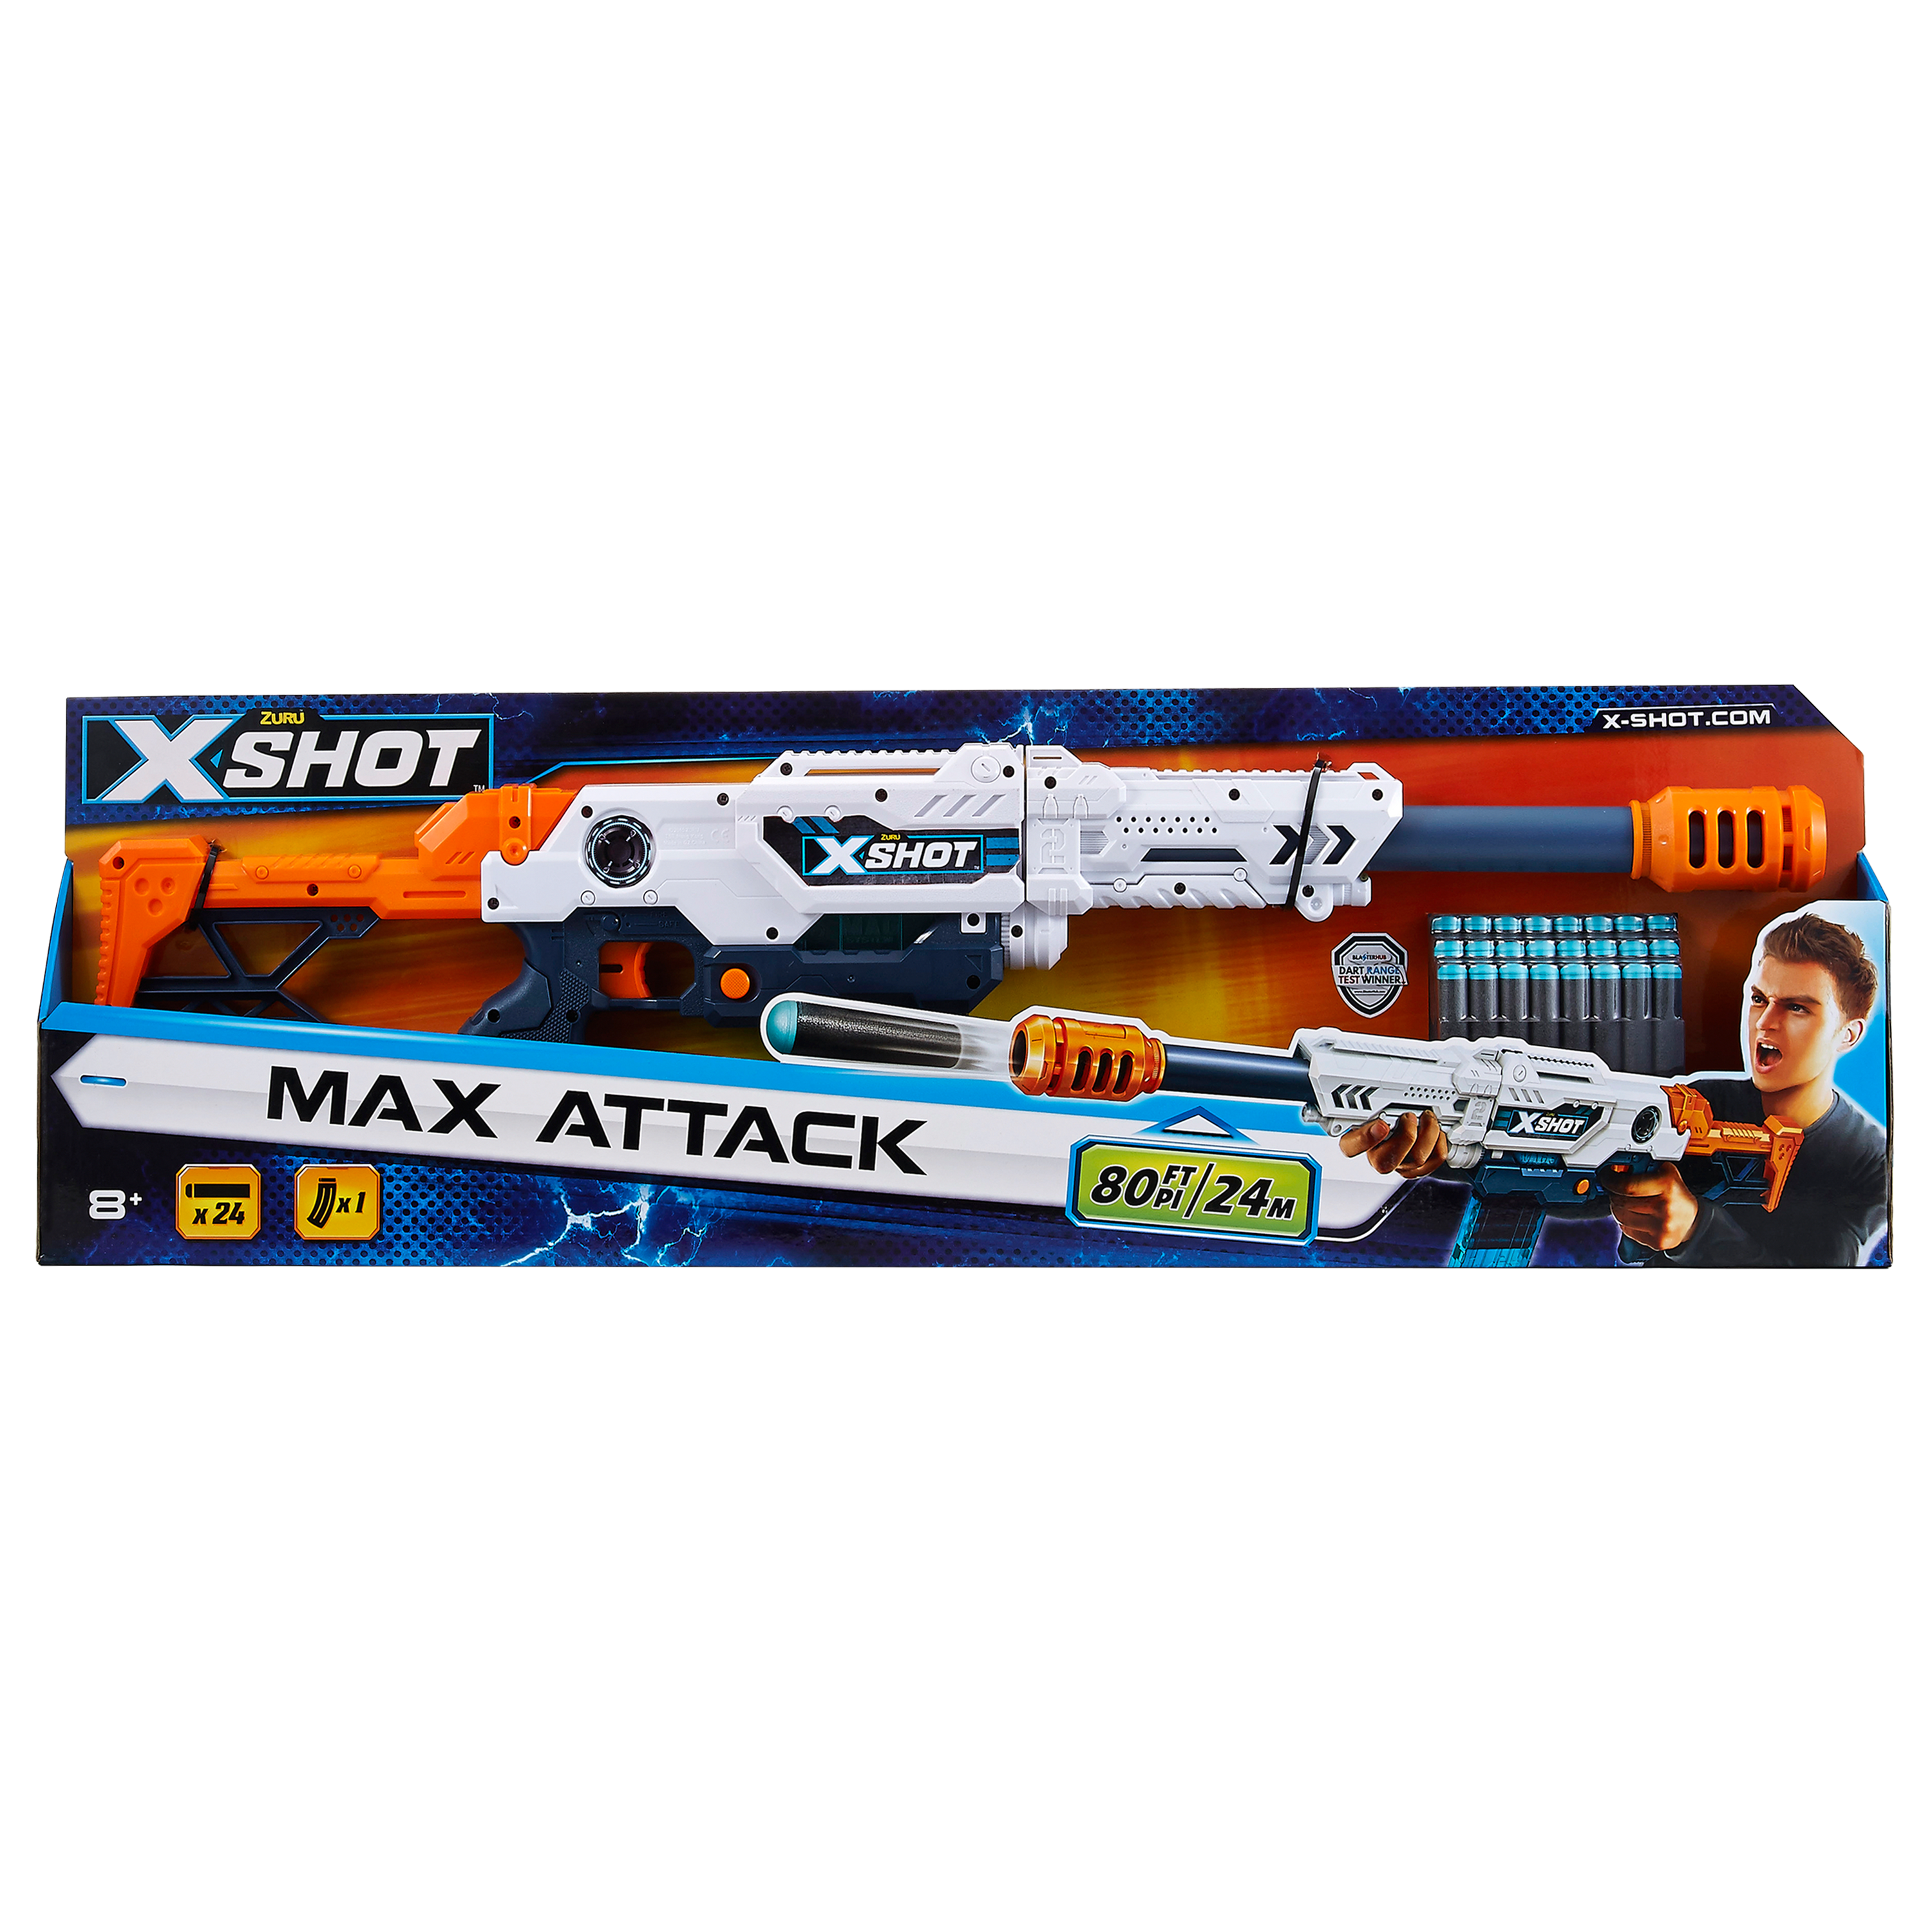 Fucile x-shot max attack - SUN&SPORT, X-SHOT